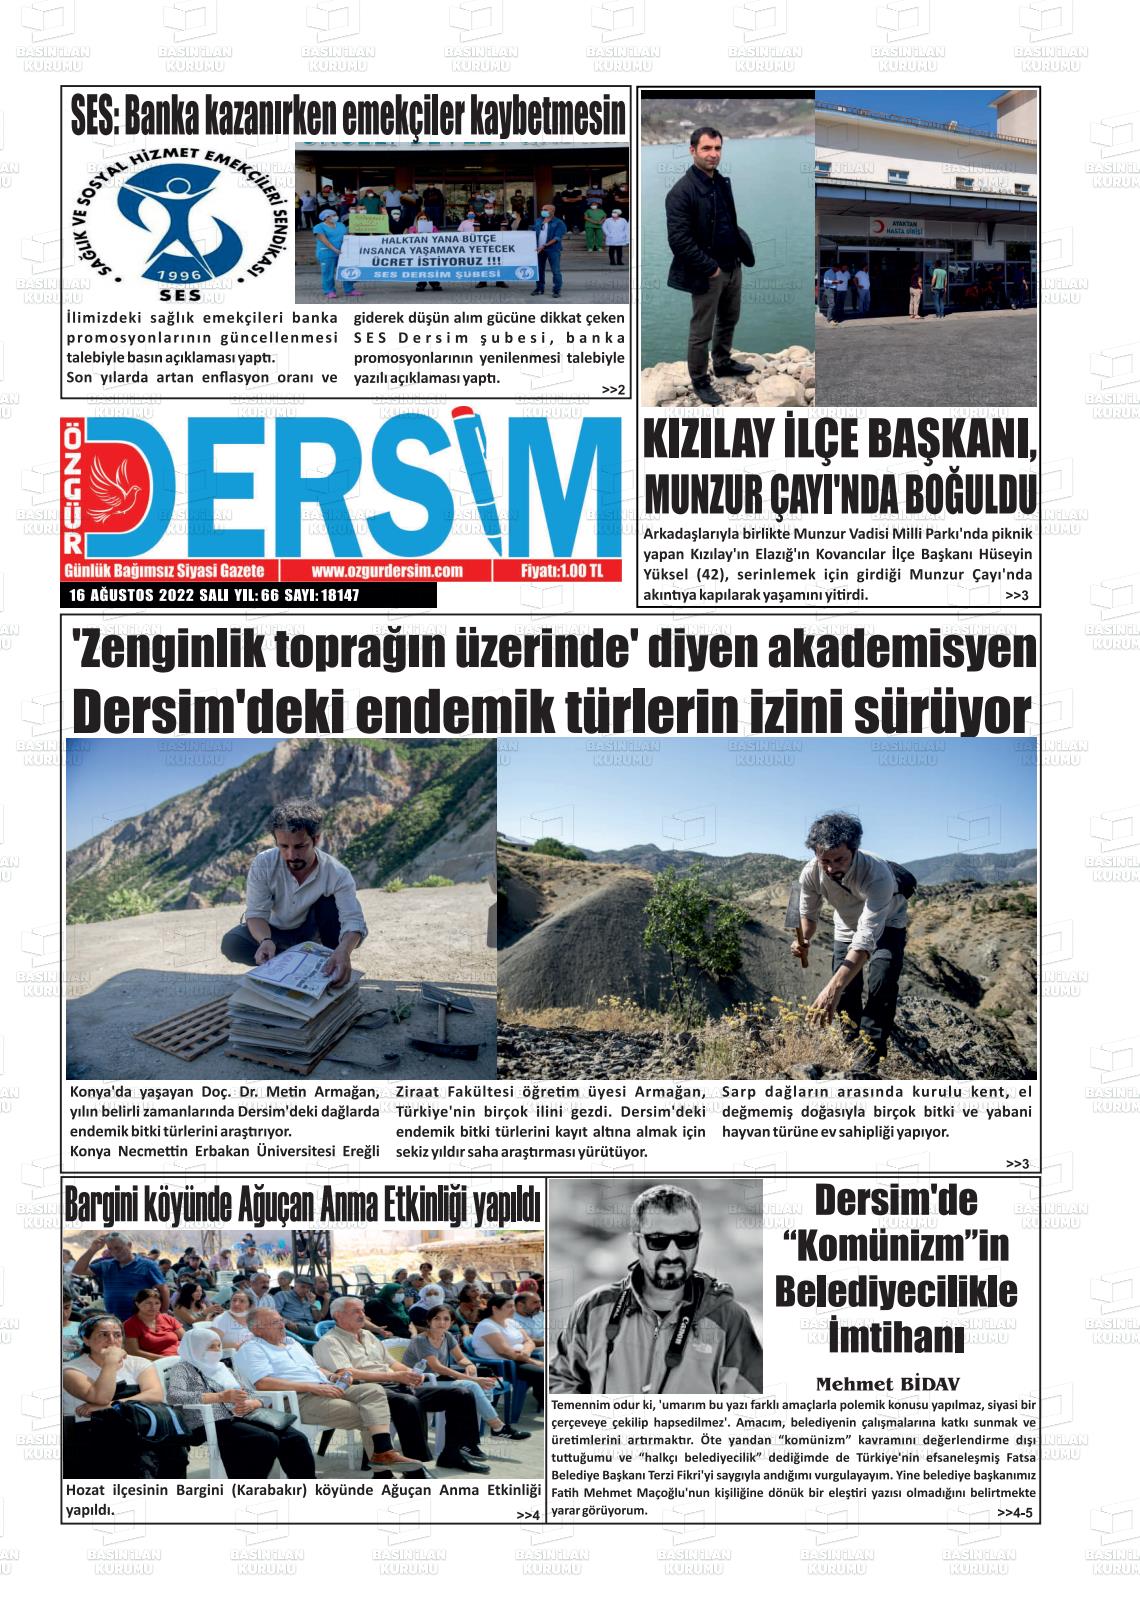 16 Ağustos 2022 Özgür Dersim Gazete Manşeti